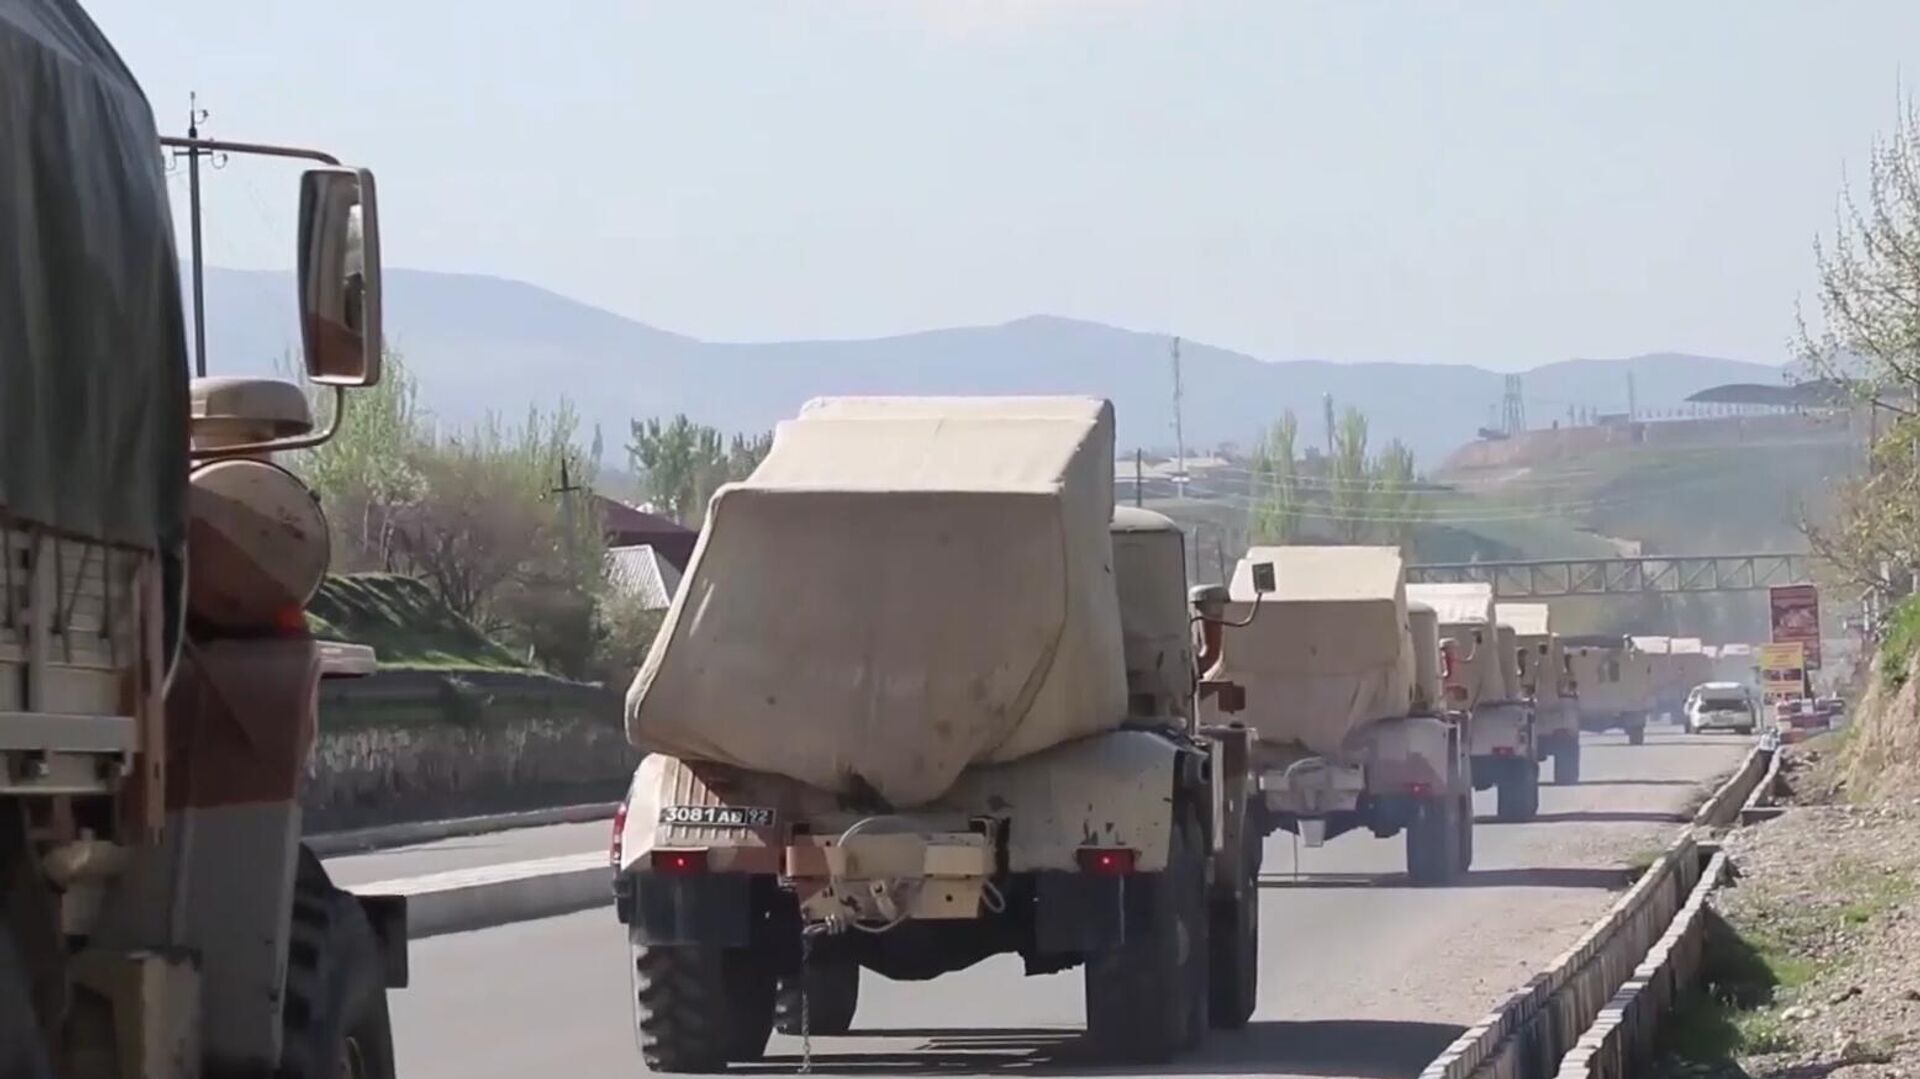 Vehículos militares rusos circulan por una carretera en Tayikistán, el 28 de julio de 2021 - Sputnik Mundo, 1920, 17.08.2021